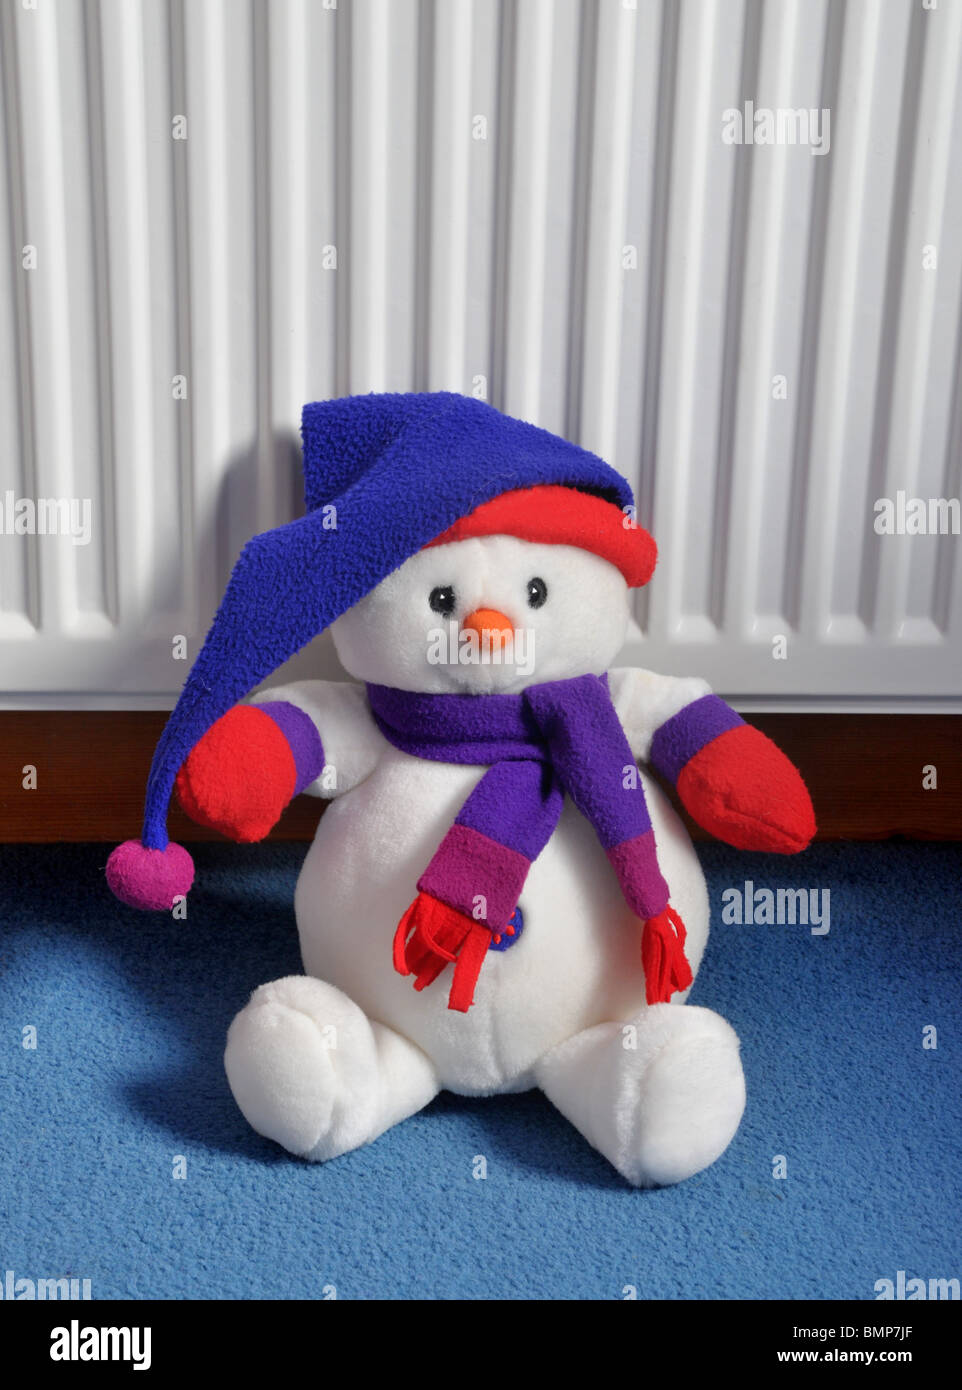 Un bonhomme de neige en peluche portant un chapeau et un foulard est assis sur le tapis appuyé contre le radiateur. Banque D'Images